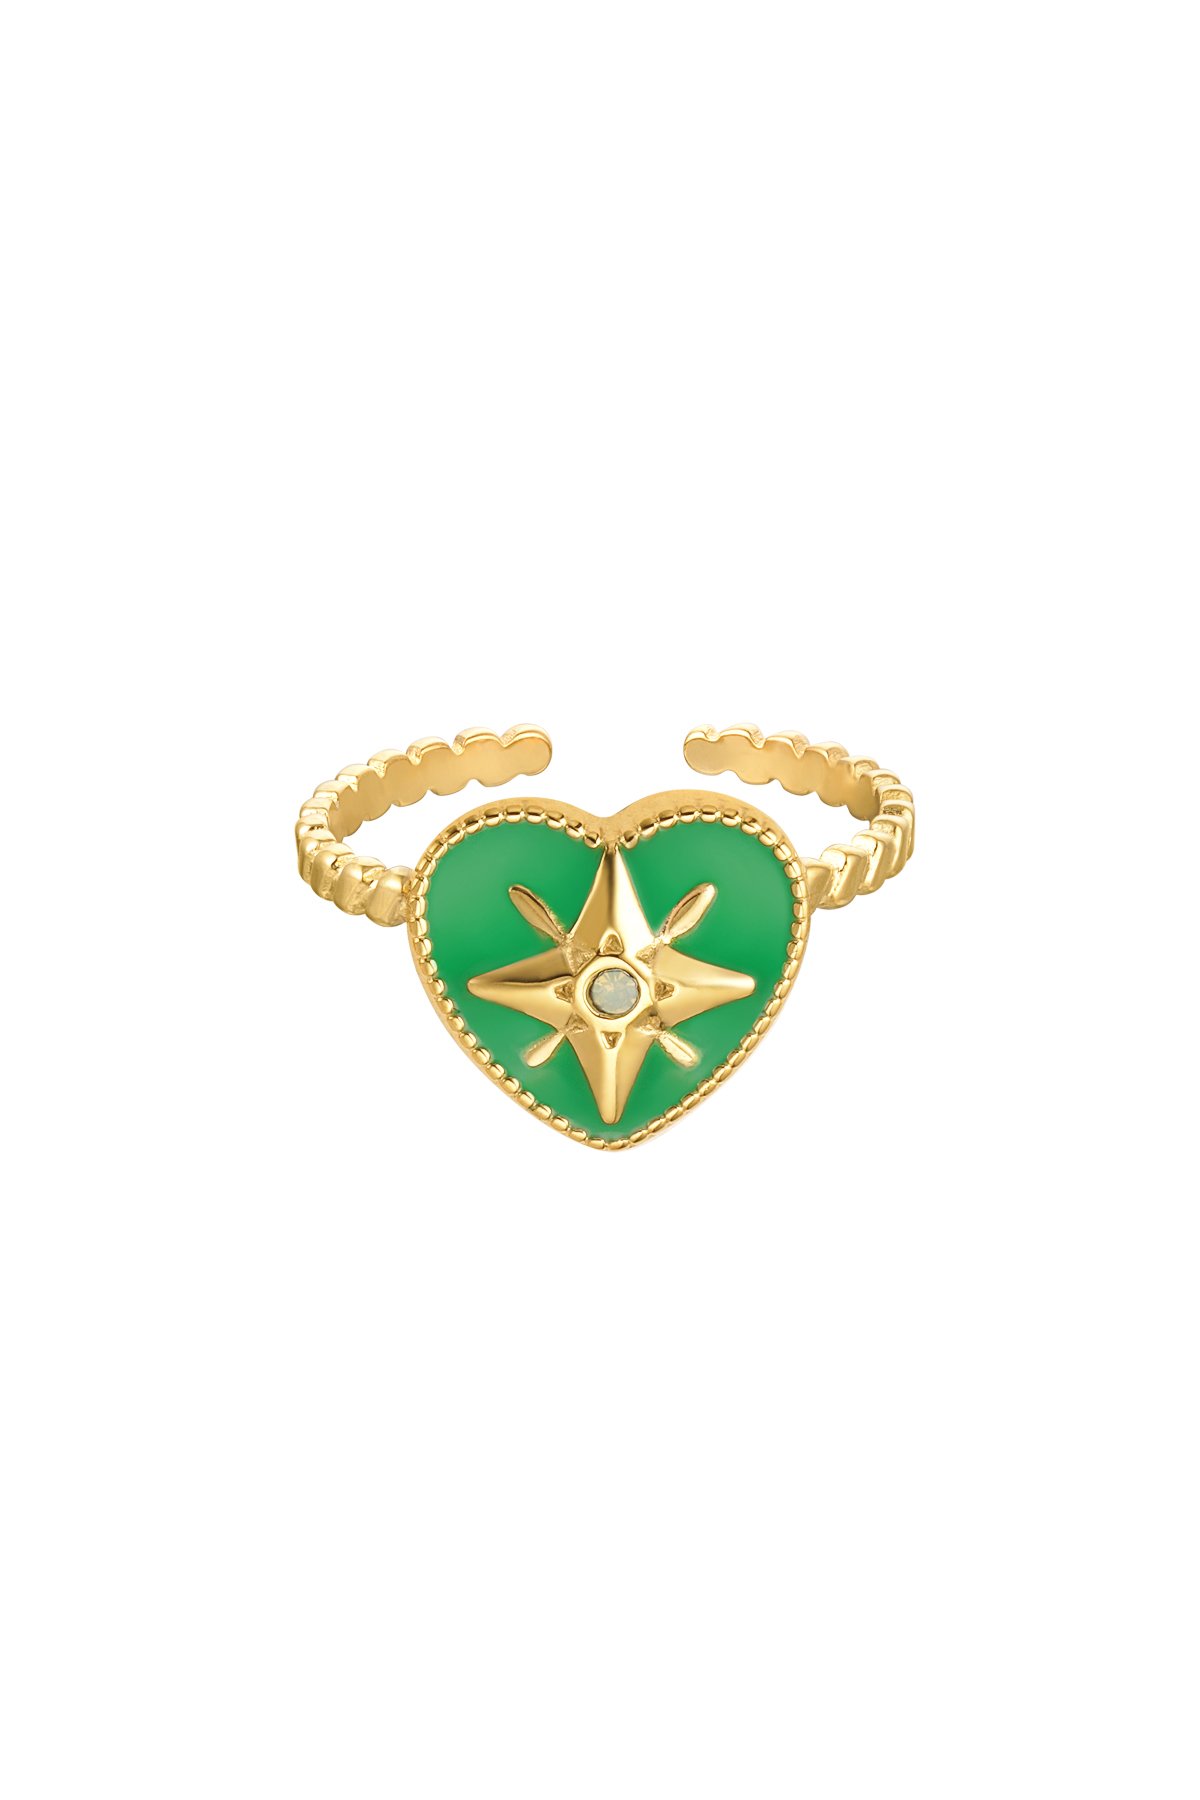 Ring gekleurd hart met ster enamel groen - goud